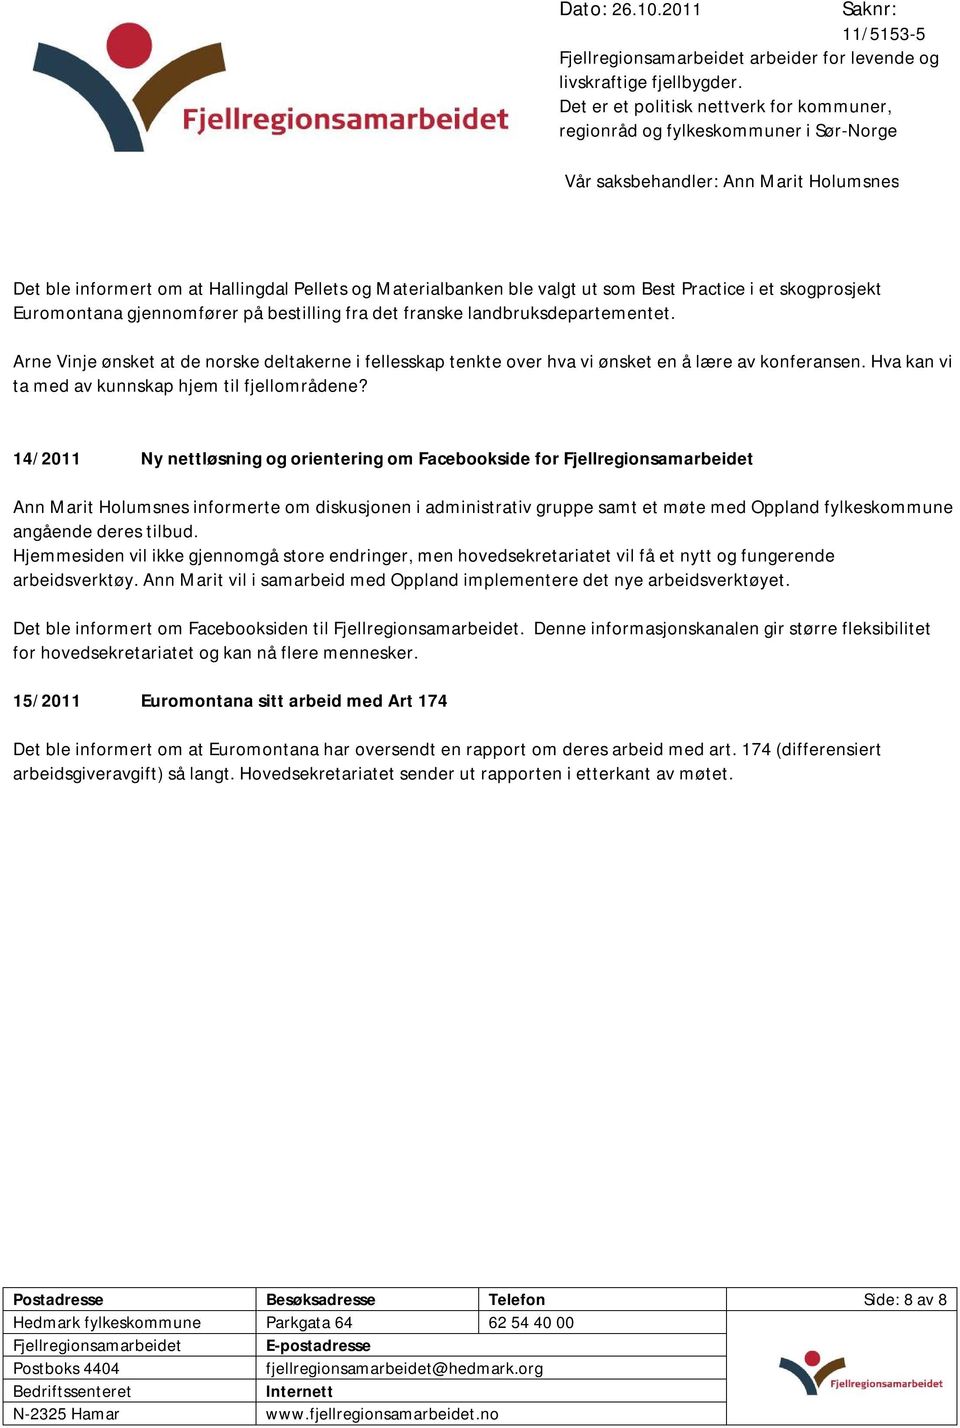 14/2011 Ny nettløsning og orientering om Facebookside for Ann Marit Holumsnes informerte om diskusjonen i administrativ gruppe samt et møte med Oppland fylkeskommune angående deres tilbud.